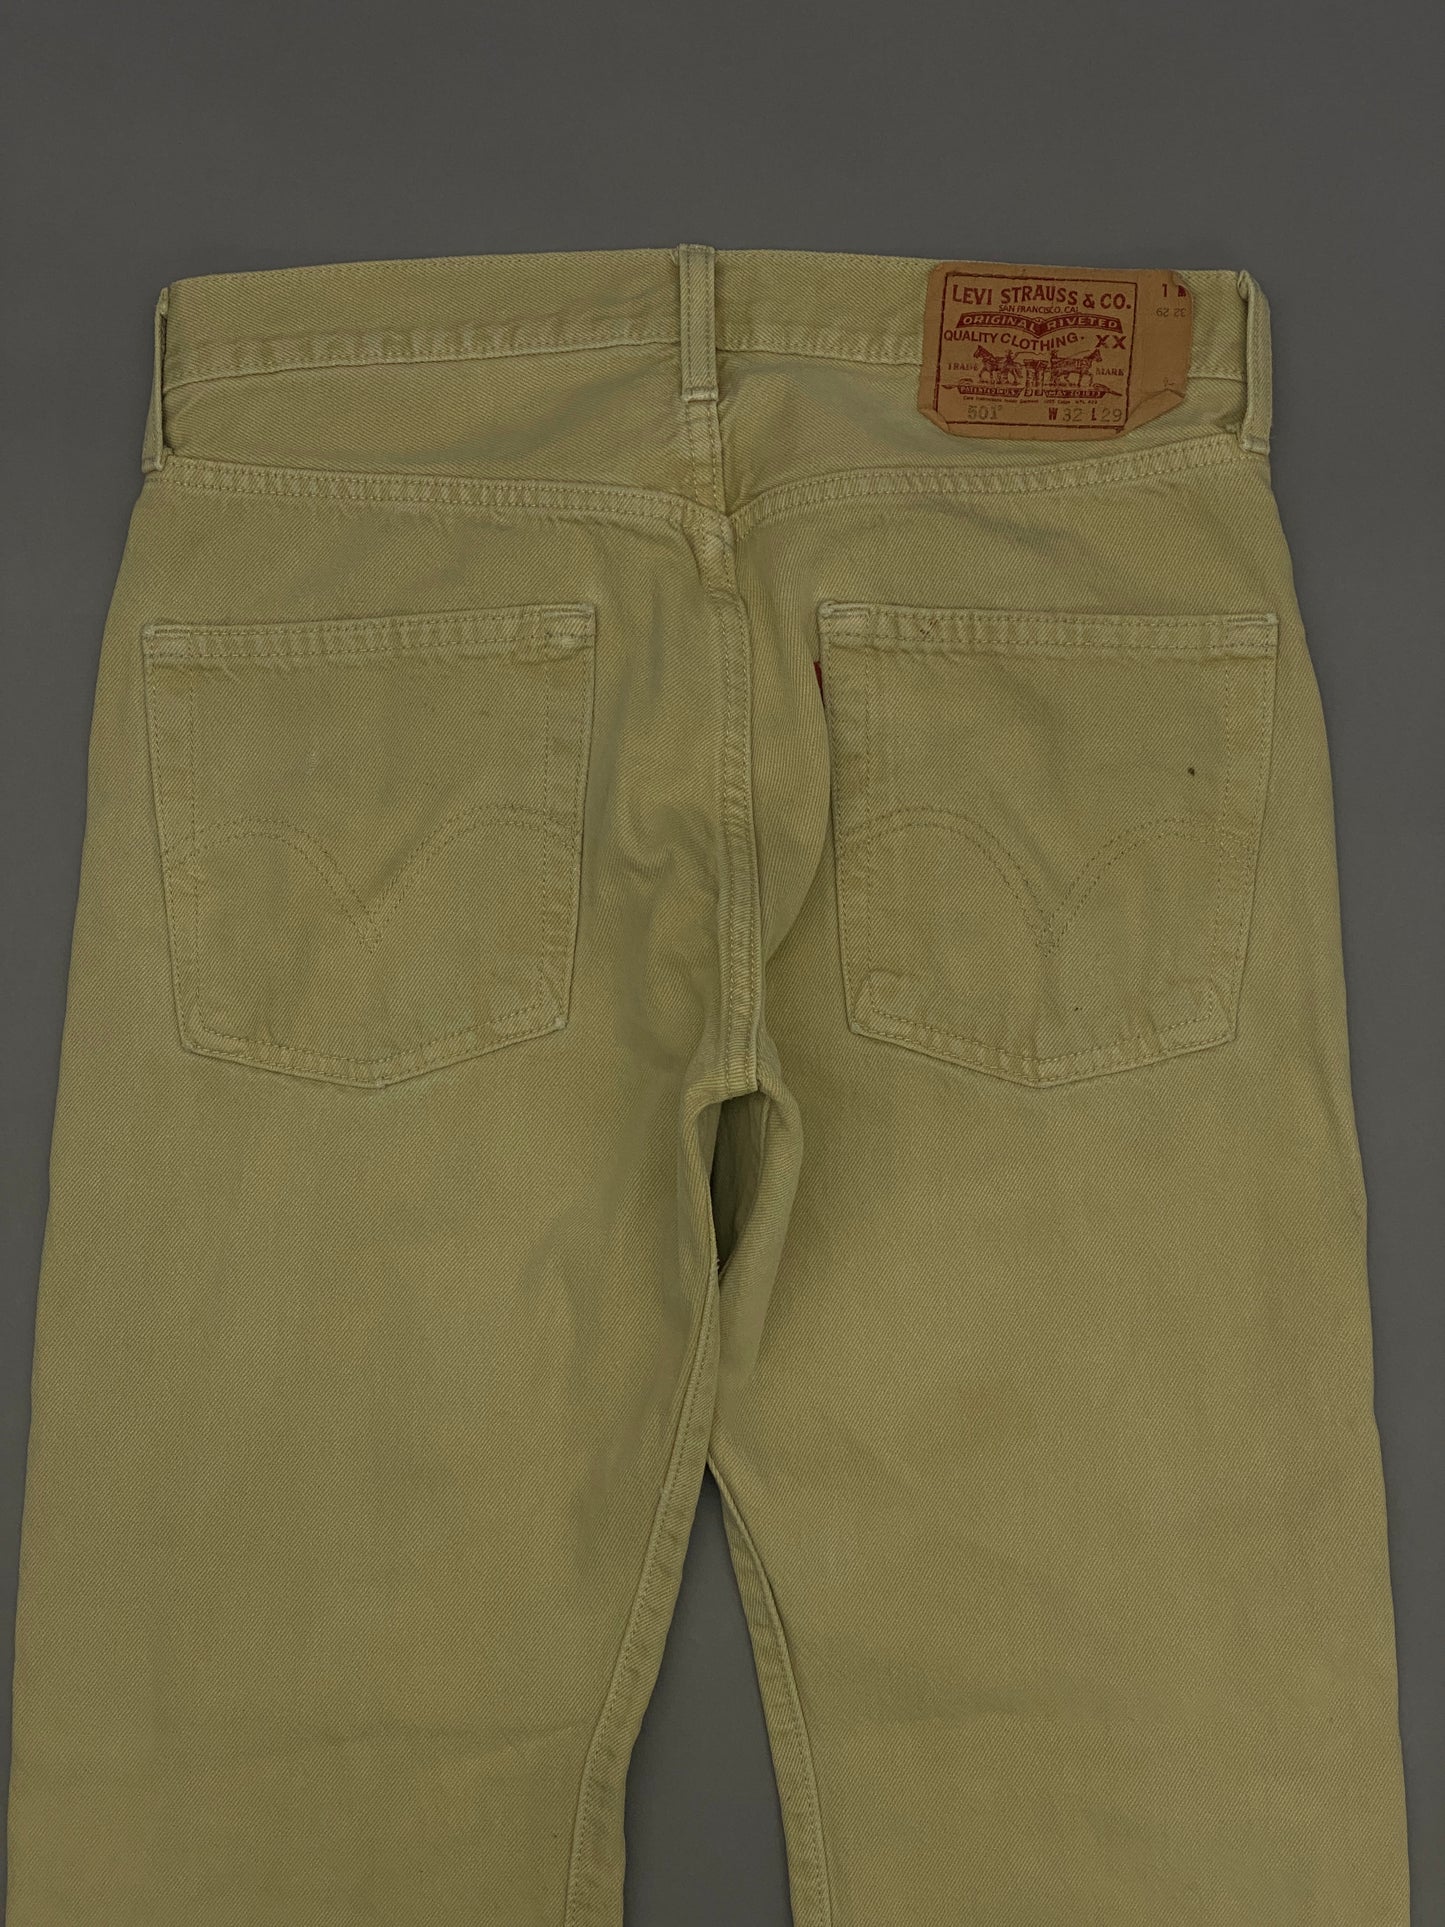 Jeans Levis 501 Vintage - 32 x 29